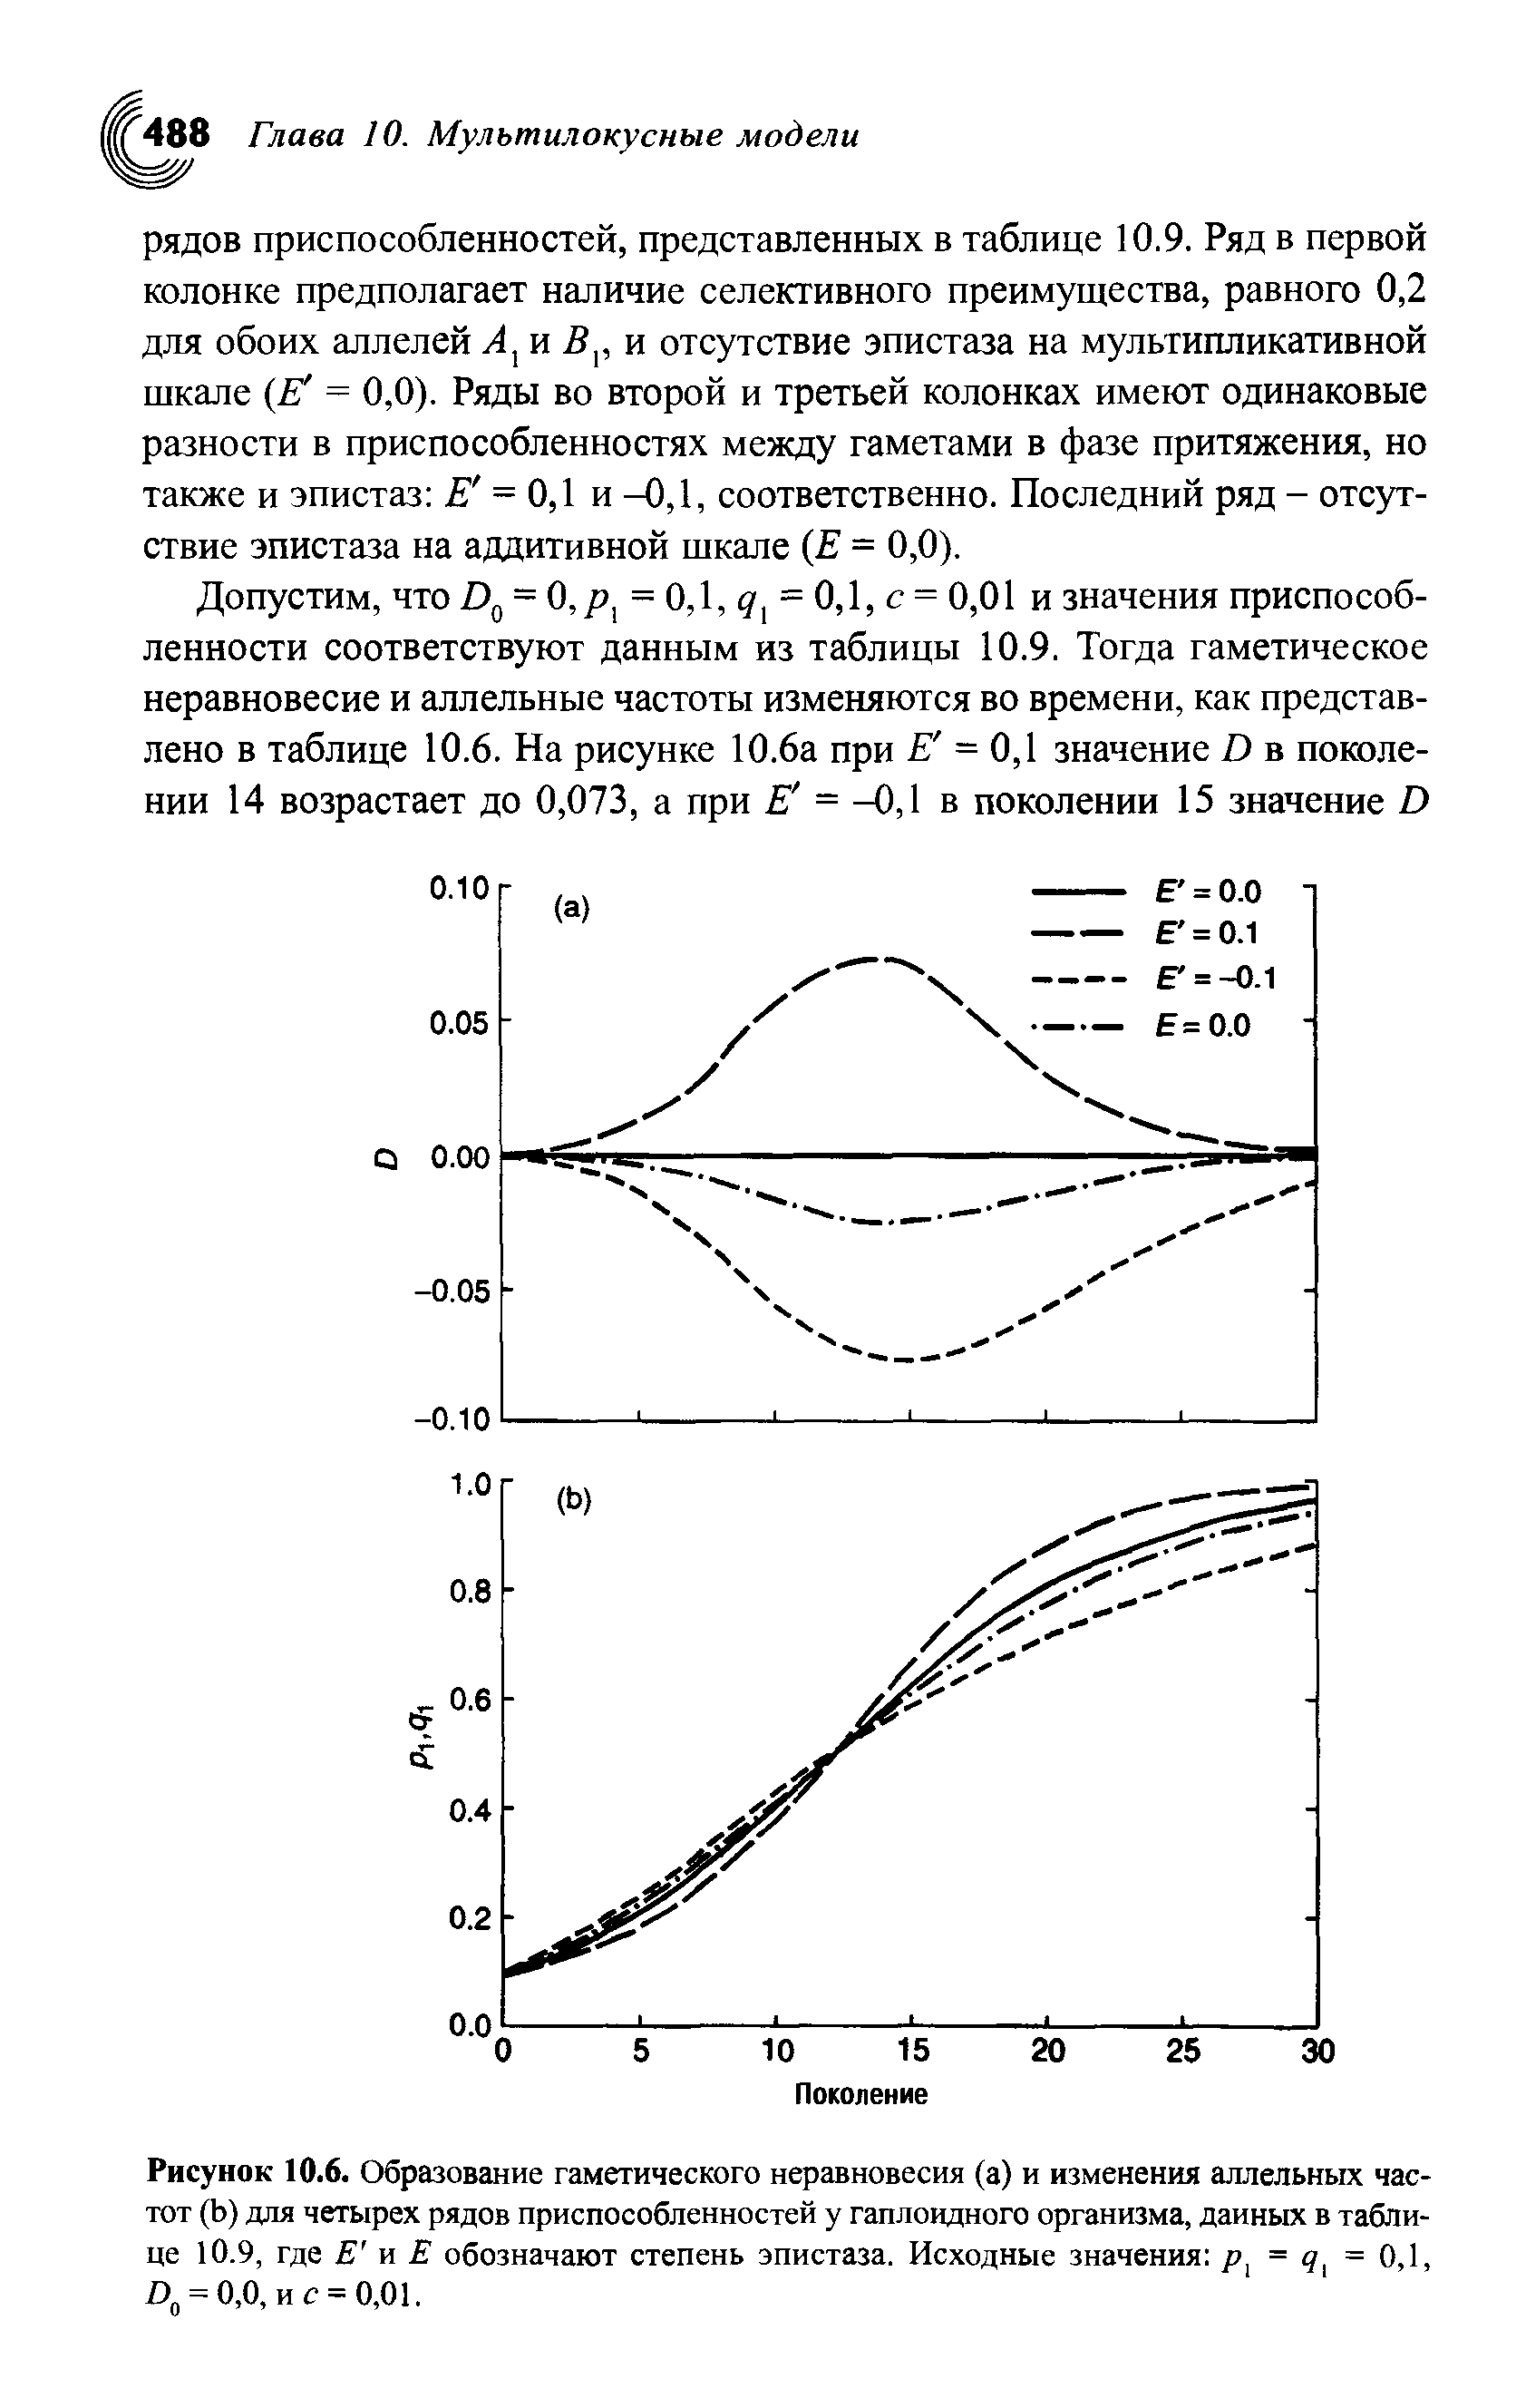 Рисунок 10.6. Образование гаметического неравновесия (а) и изменения аллельных частот (Ь) для четырех рядов приспособленностей у гаплоидного организма, данных в таблице 10.9, где Е и Е обозначают степень эпистаза. Исходные значения р = < = 0,1, >0 = 0,0, и с = 0,01.